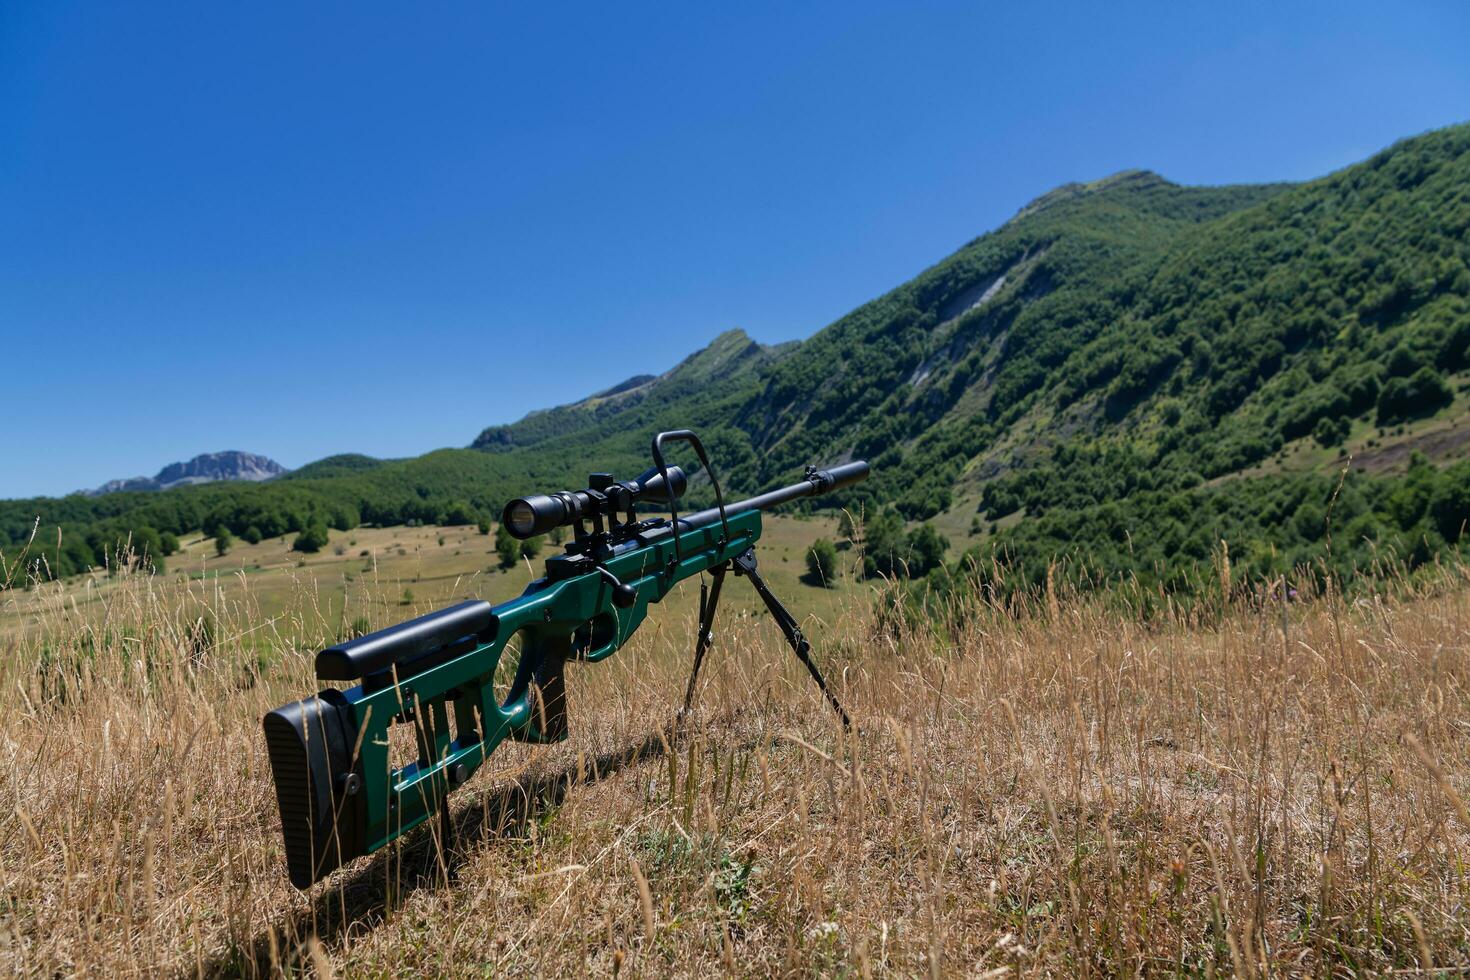 en grön militär prickskytt gevär med en omfattning för lång distans taktisk modern krigföring i gul gräs blå himmel foto